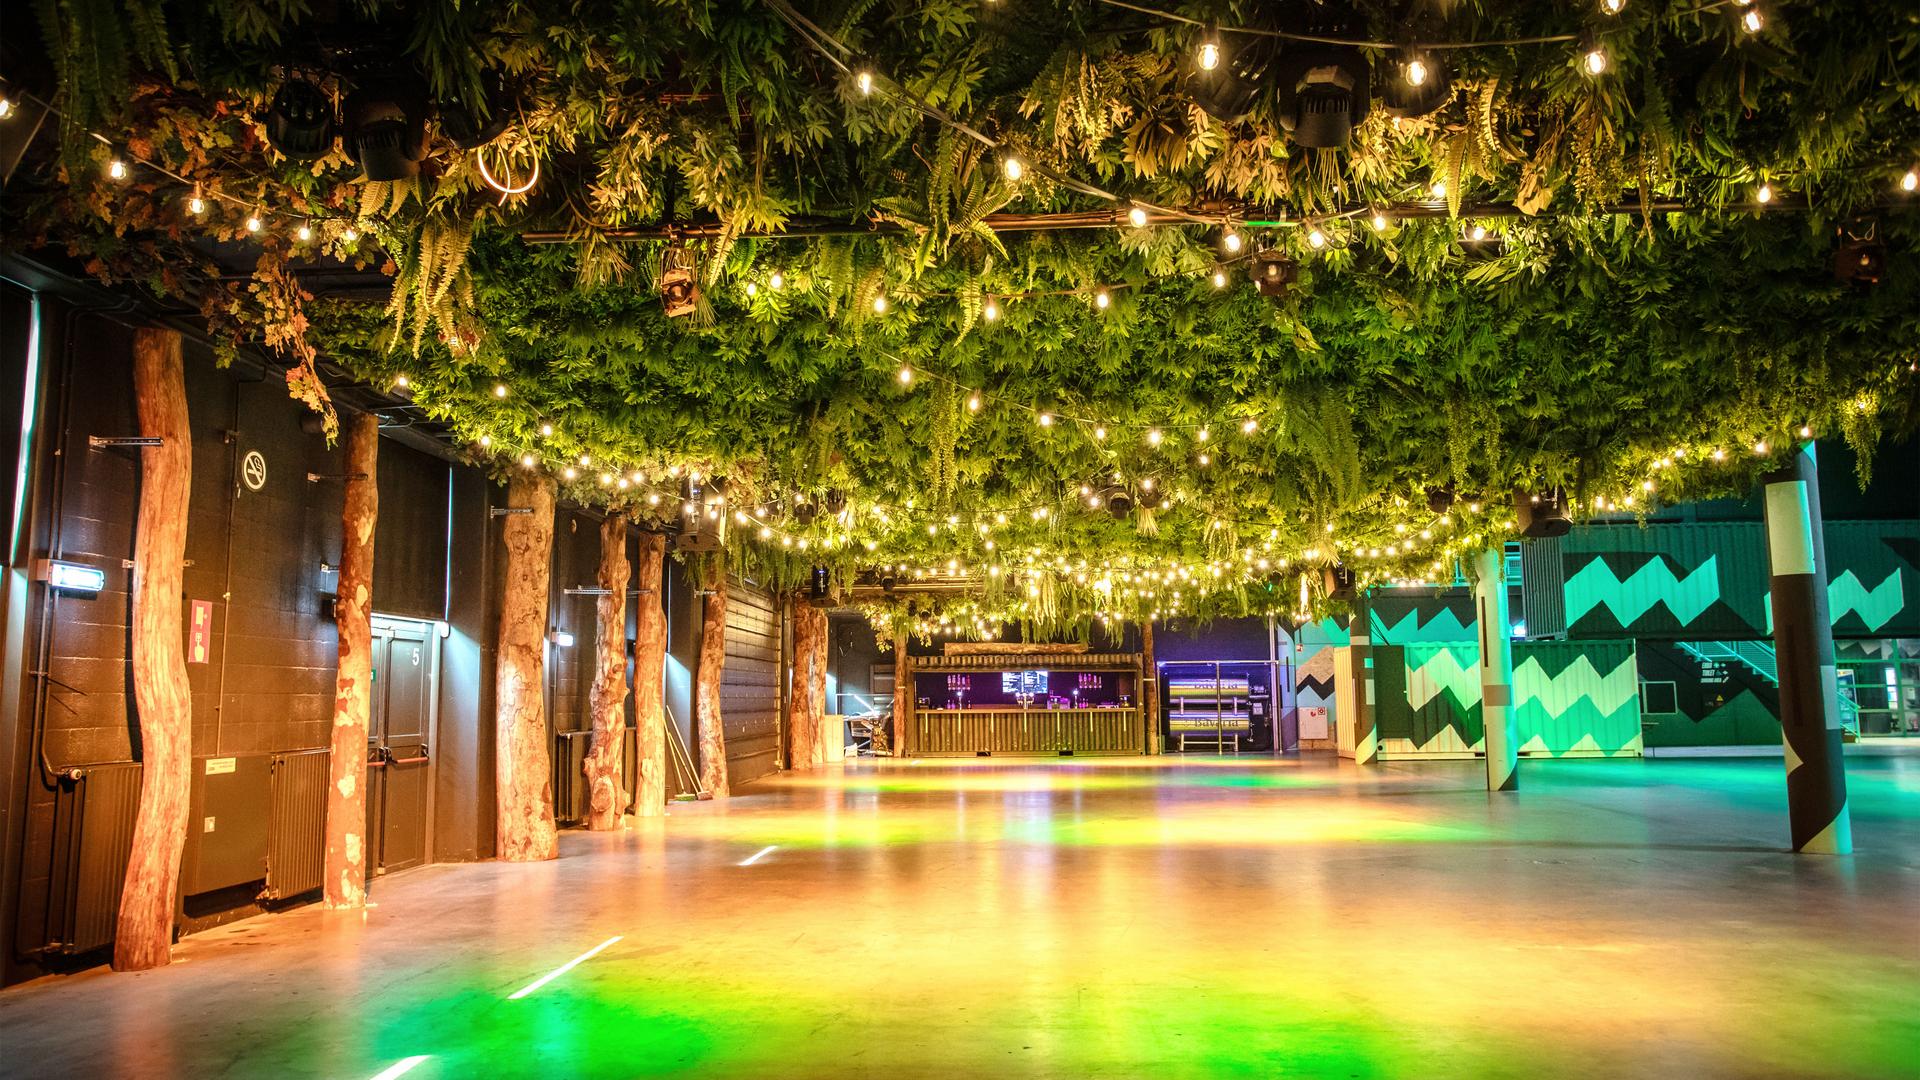 Jet Wash7 illuminates the Vibes' Urban Garden room